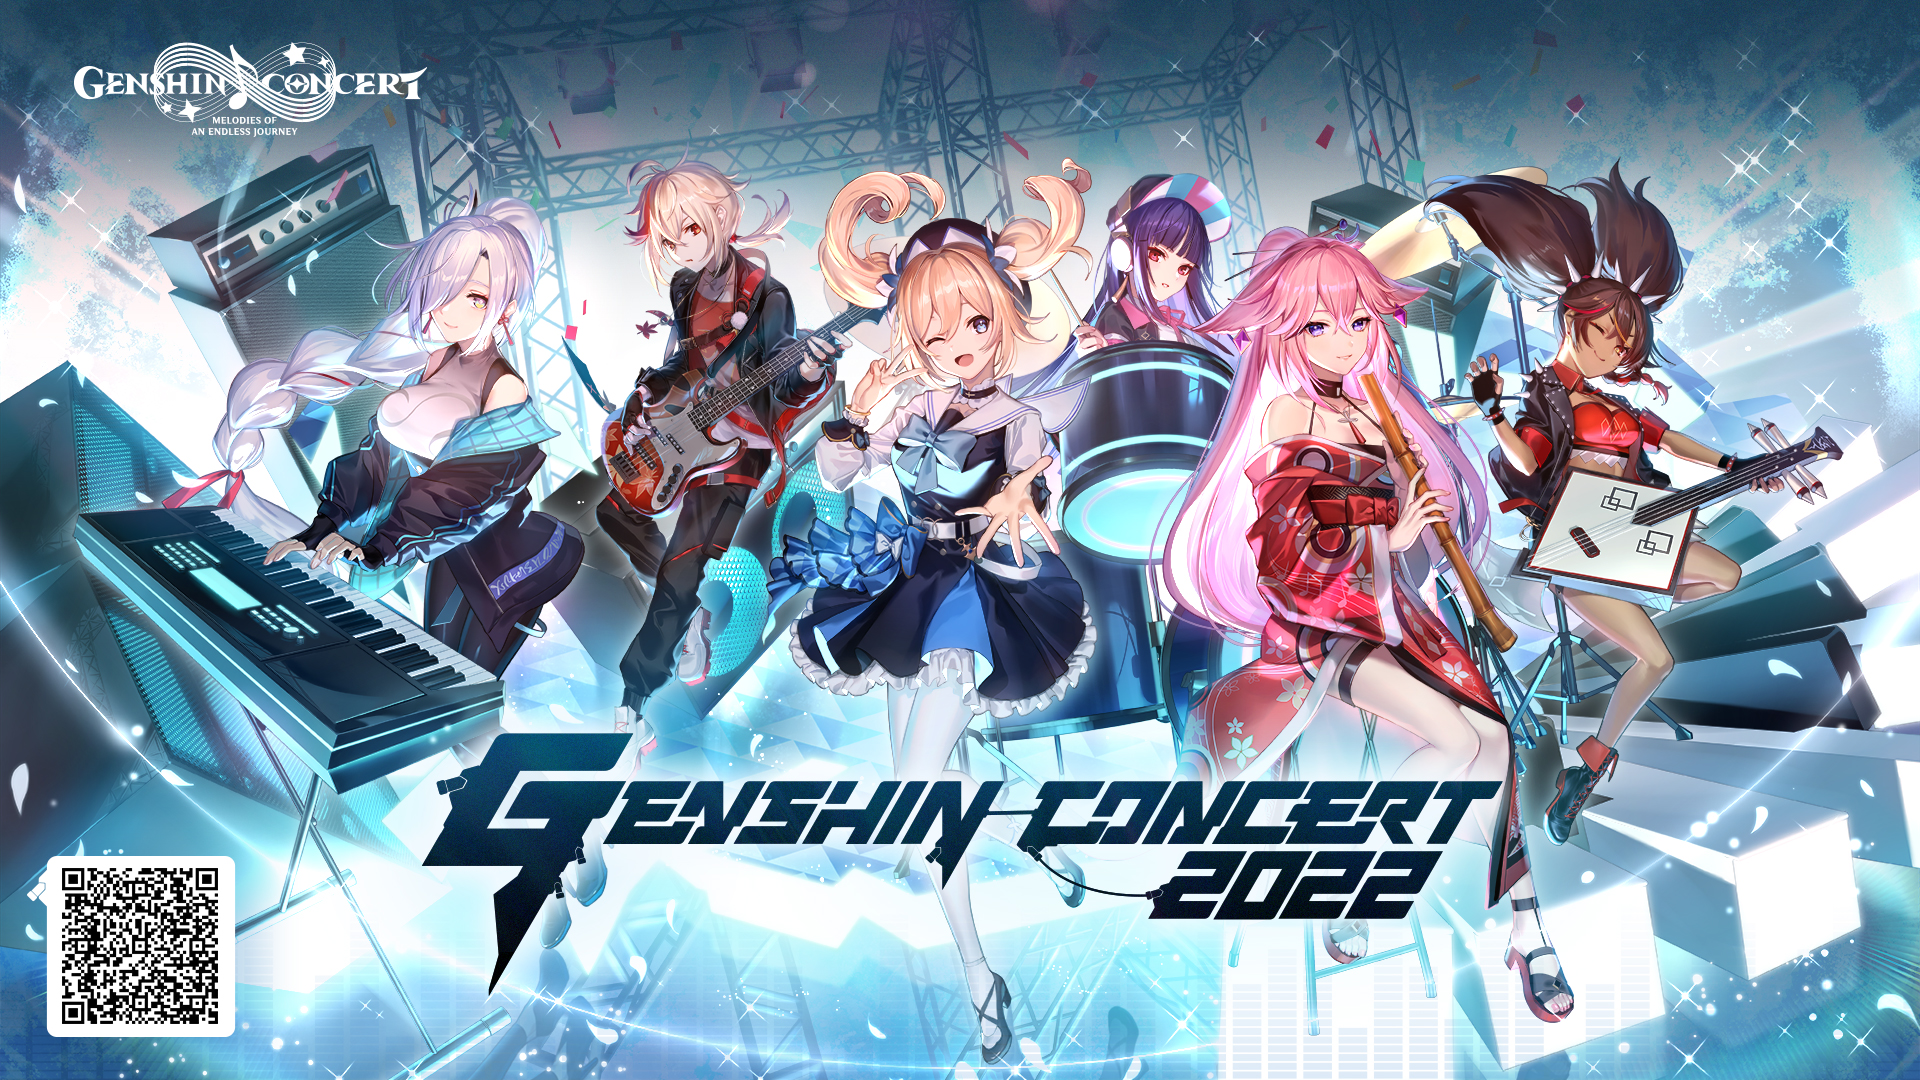 Genshin Concert 2022 sẽ diễn ra vào ngày 2 tháng 10 sắp tới